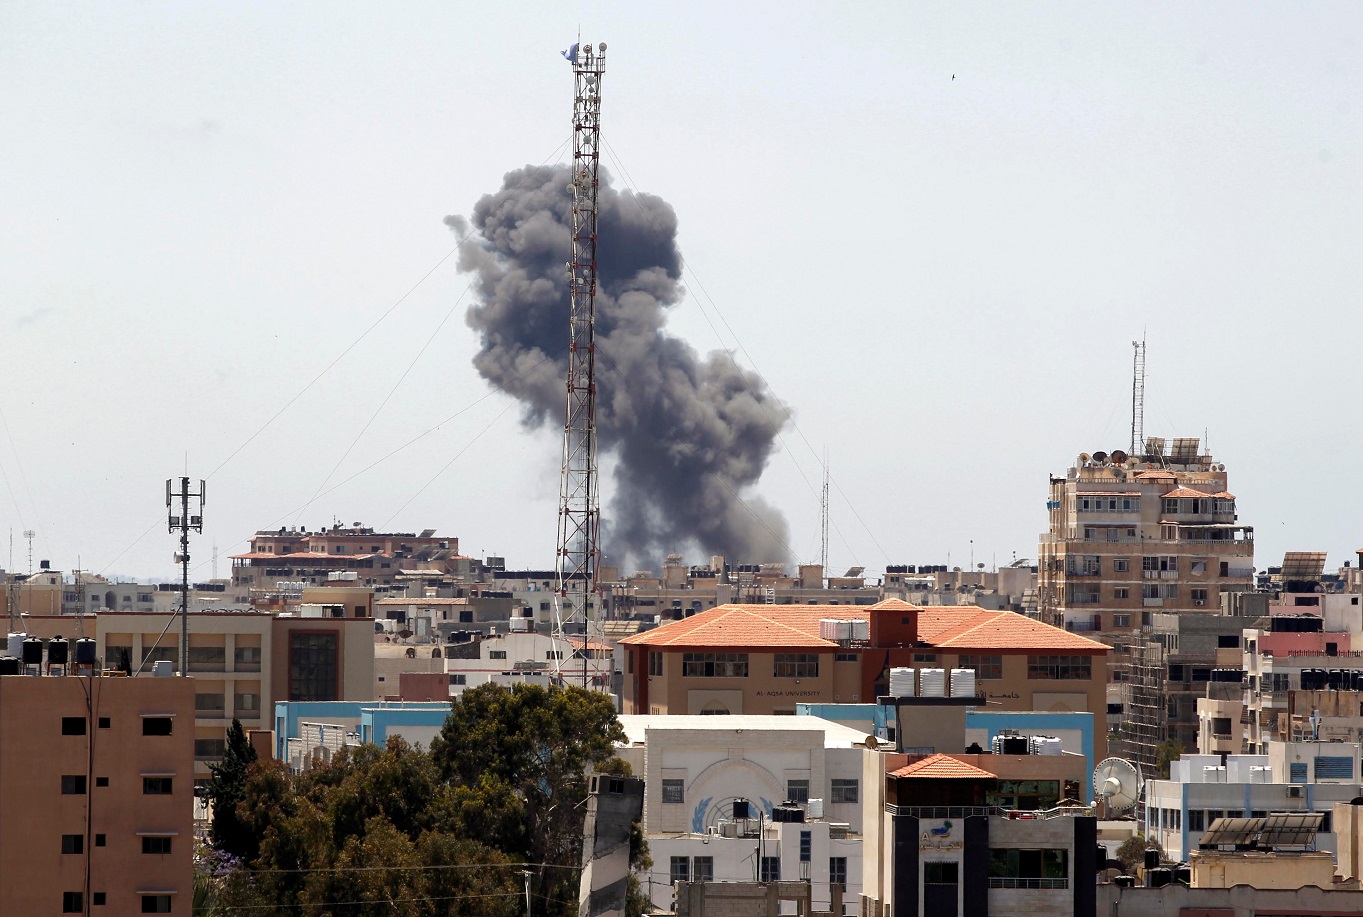 دخان يتصاعد بعد غارة جوية إسرائيلية في مدينة غزة، 19 أيار/مايو 2021. (رويترز / أحمد جاد الله)